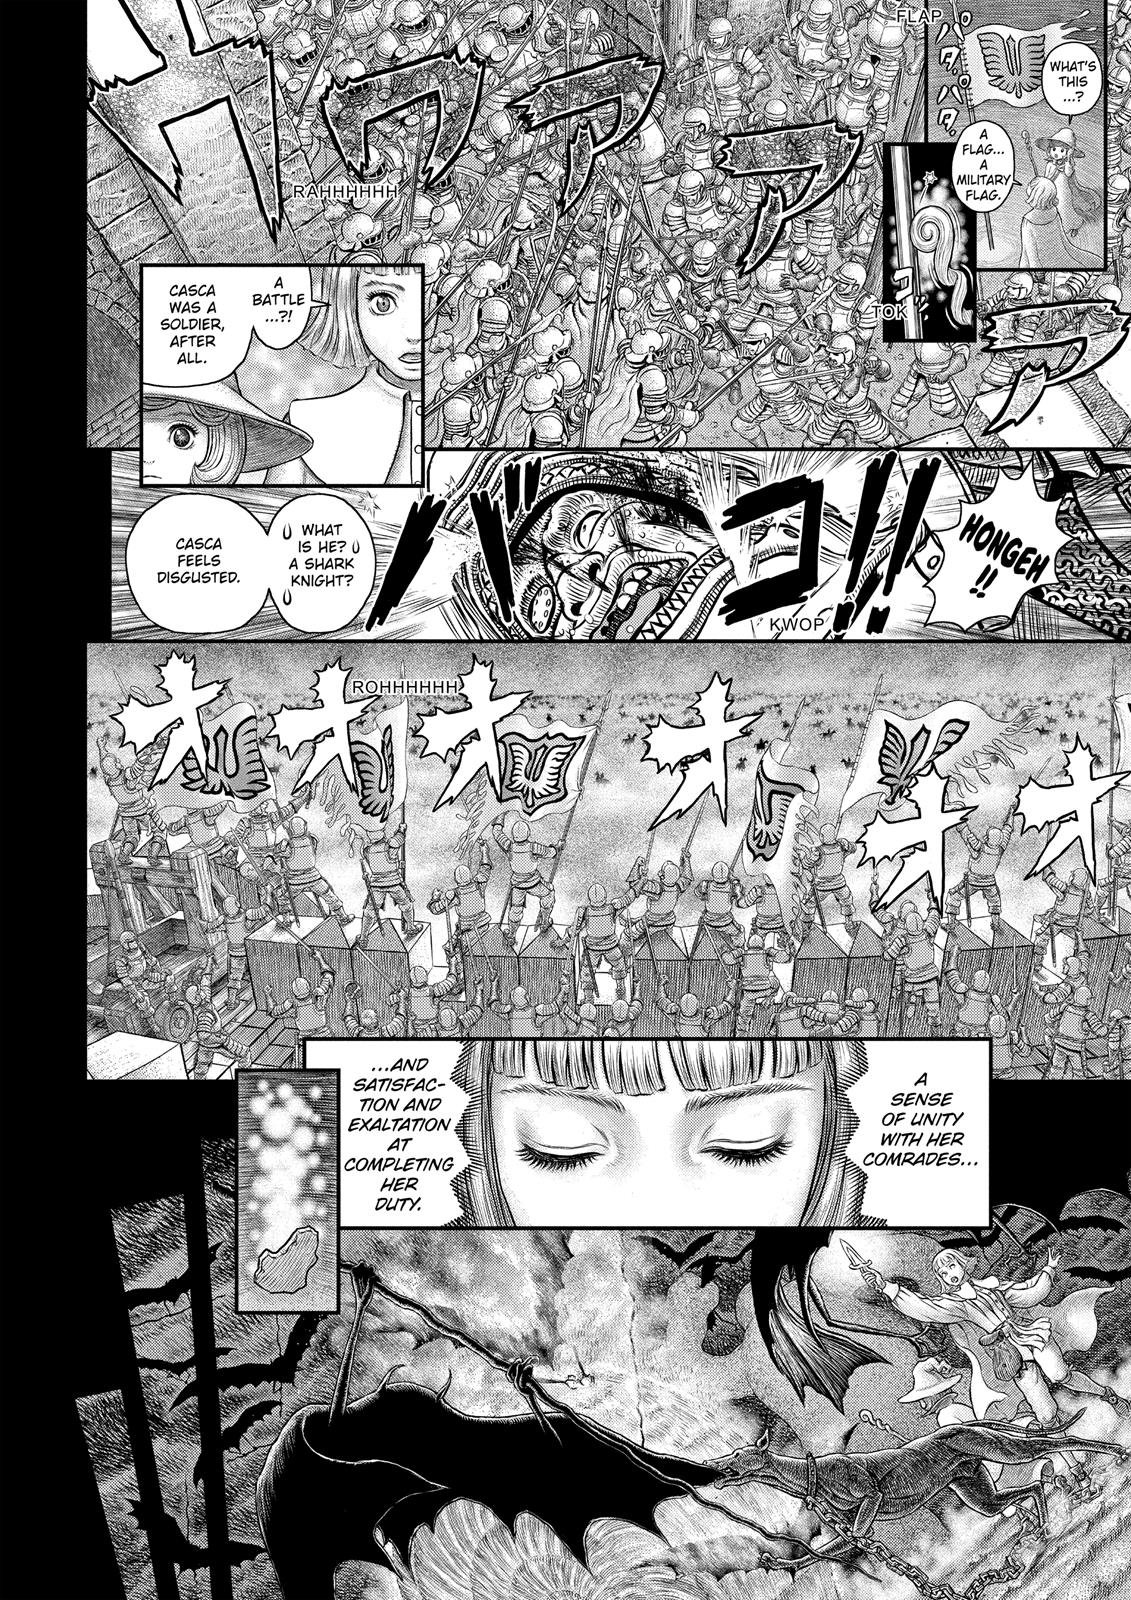 Berserk Manga Chapter 350 image 05